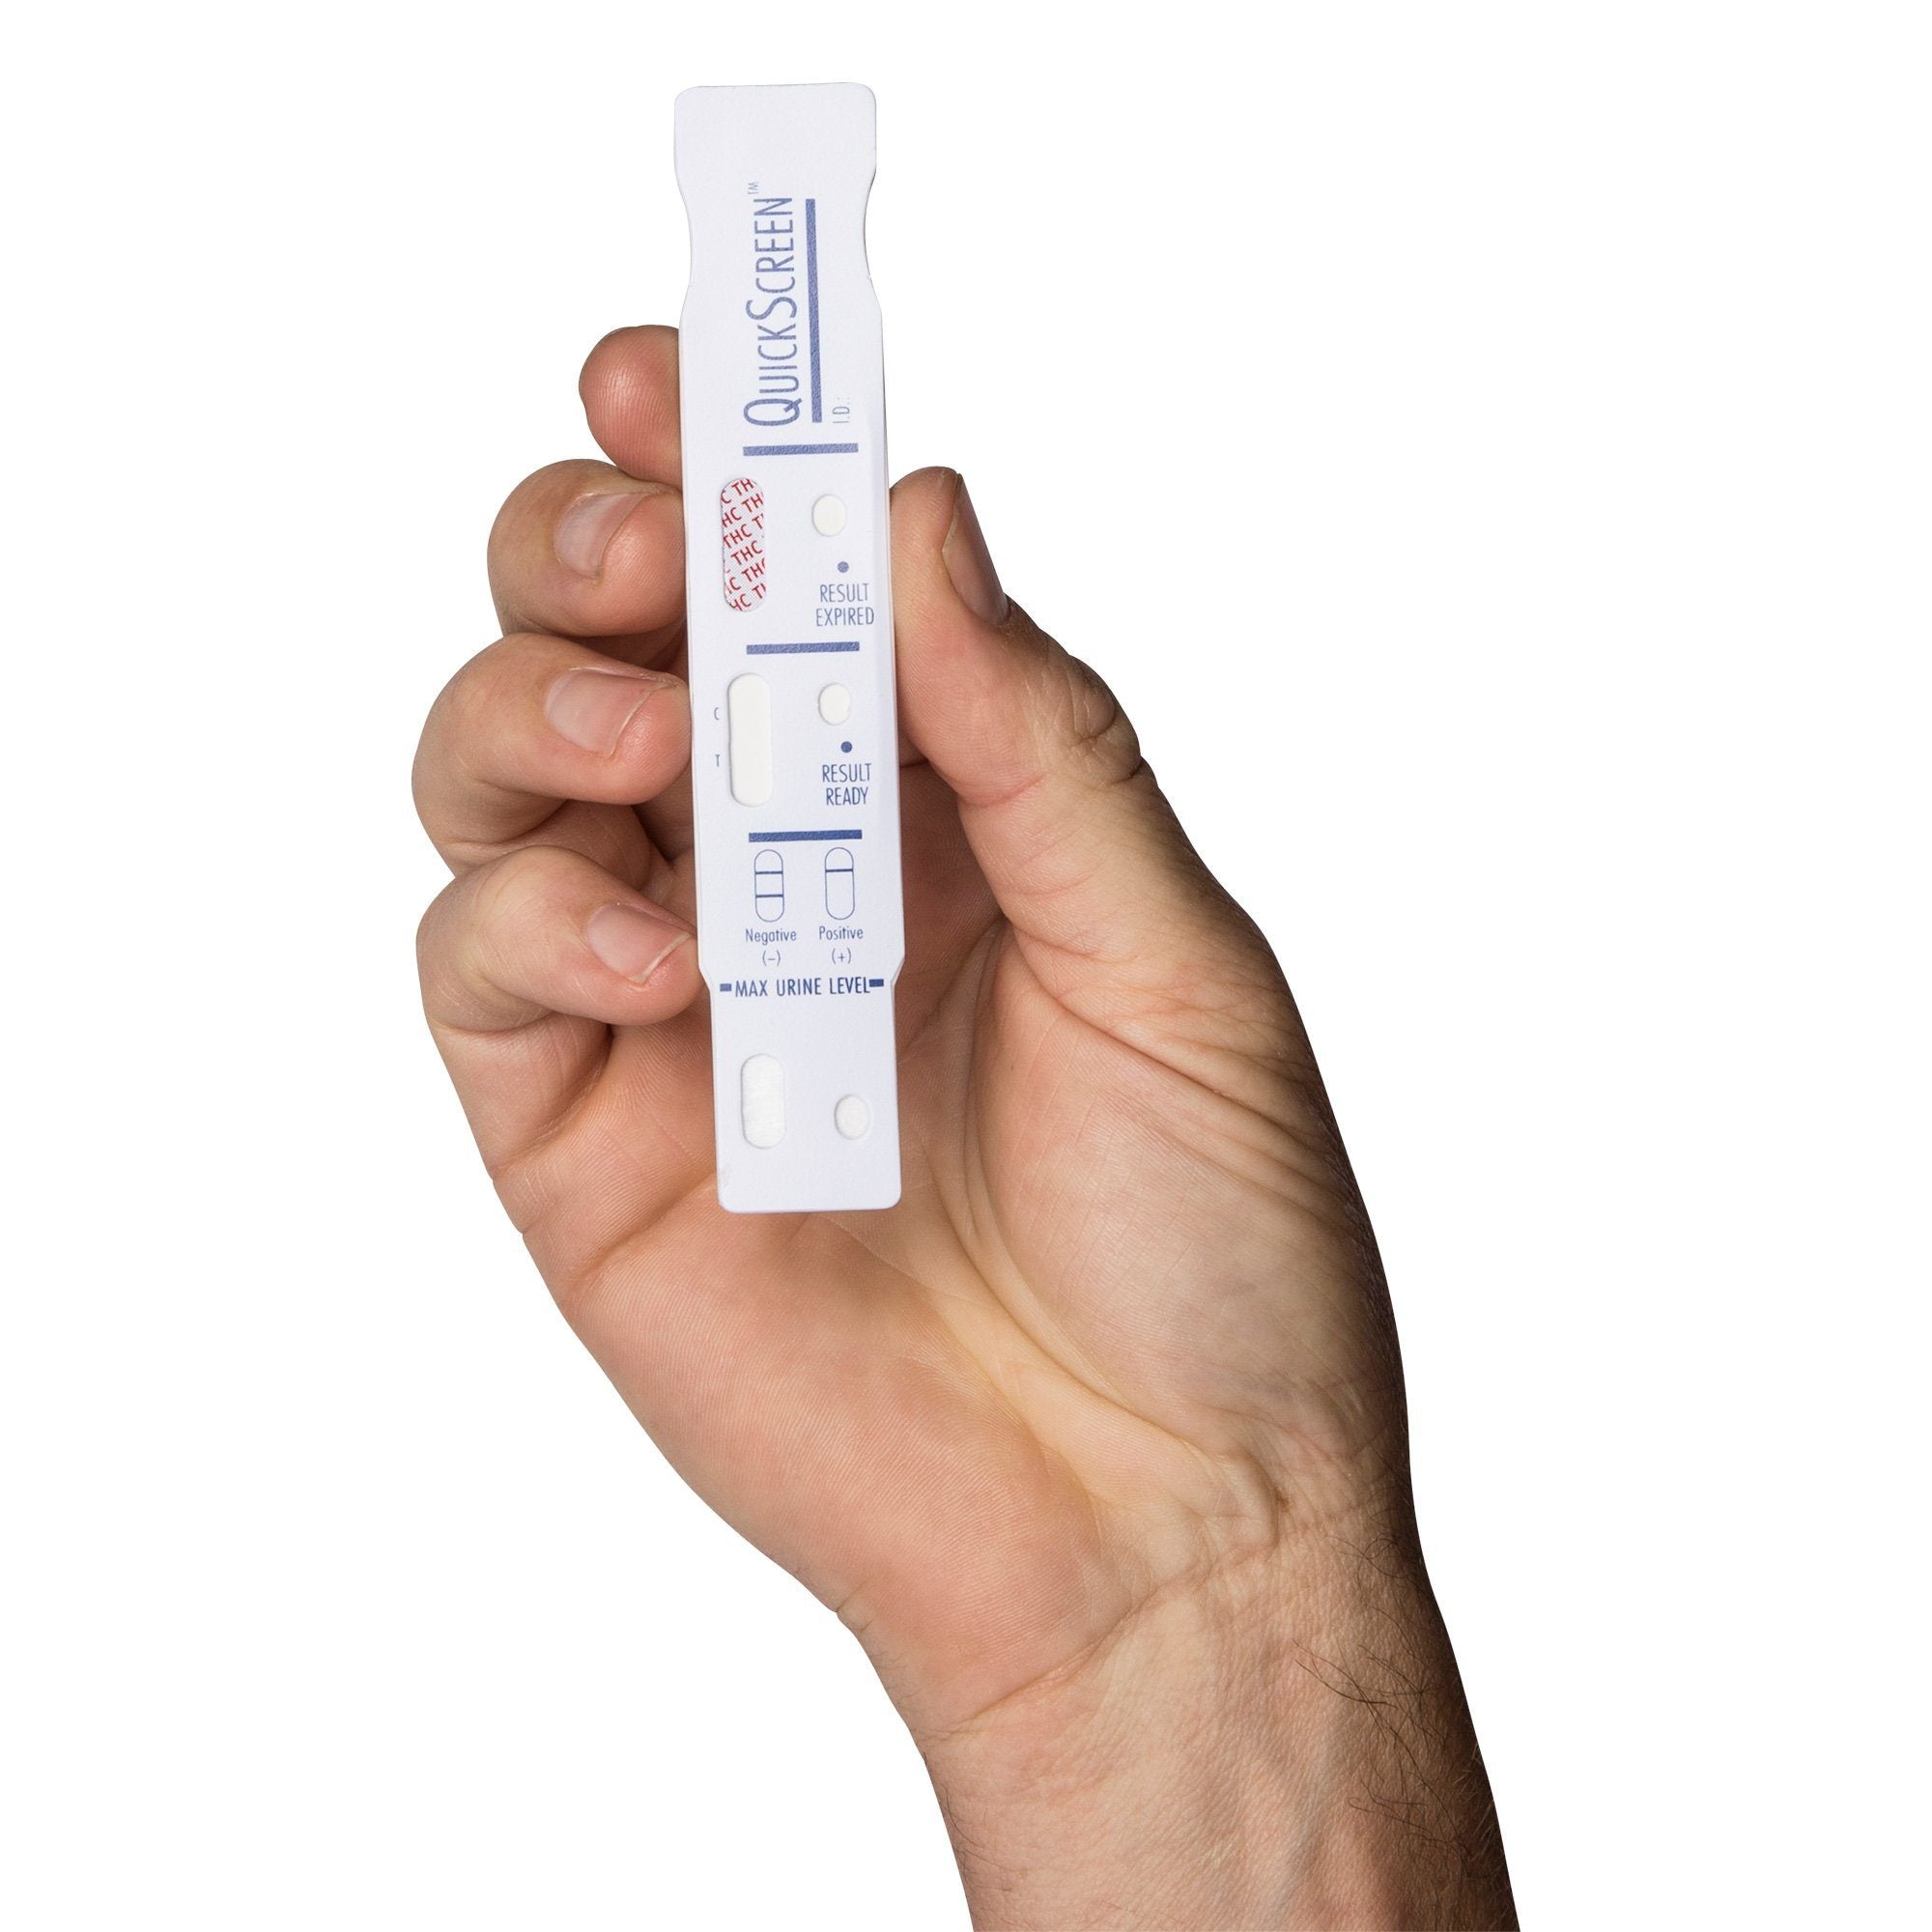  INSTANT Single Panel Drug Test Kit - Test For THC